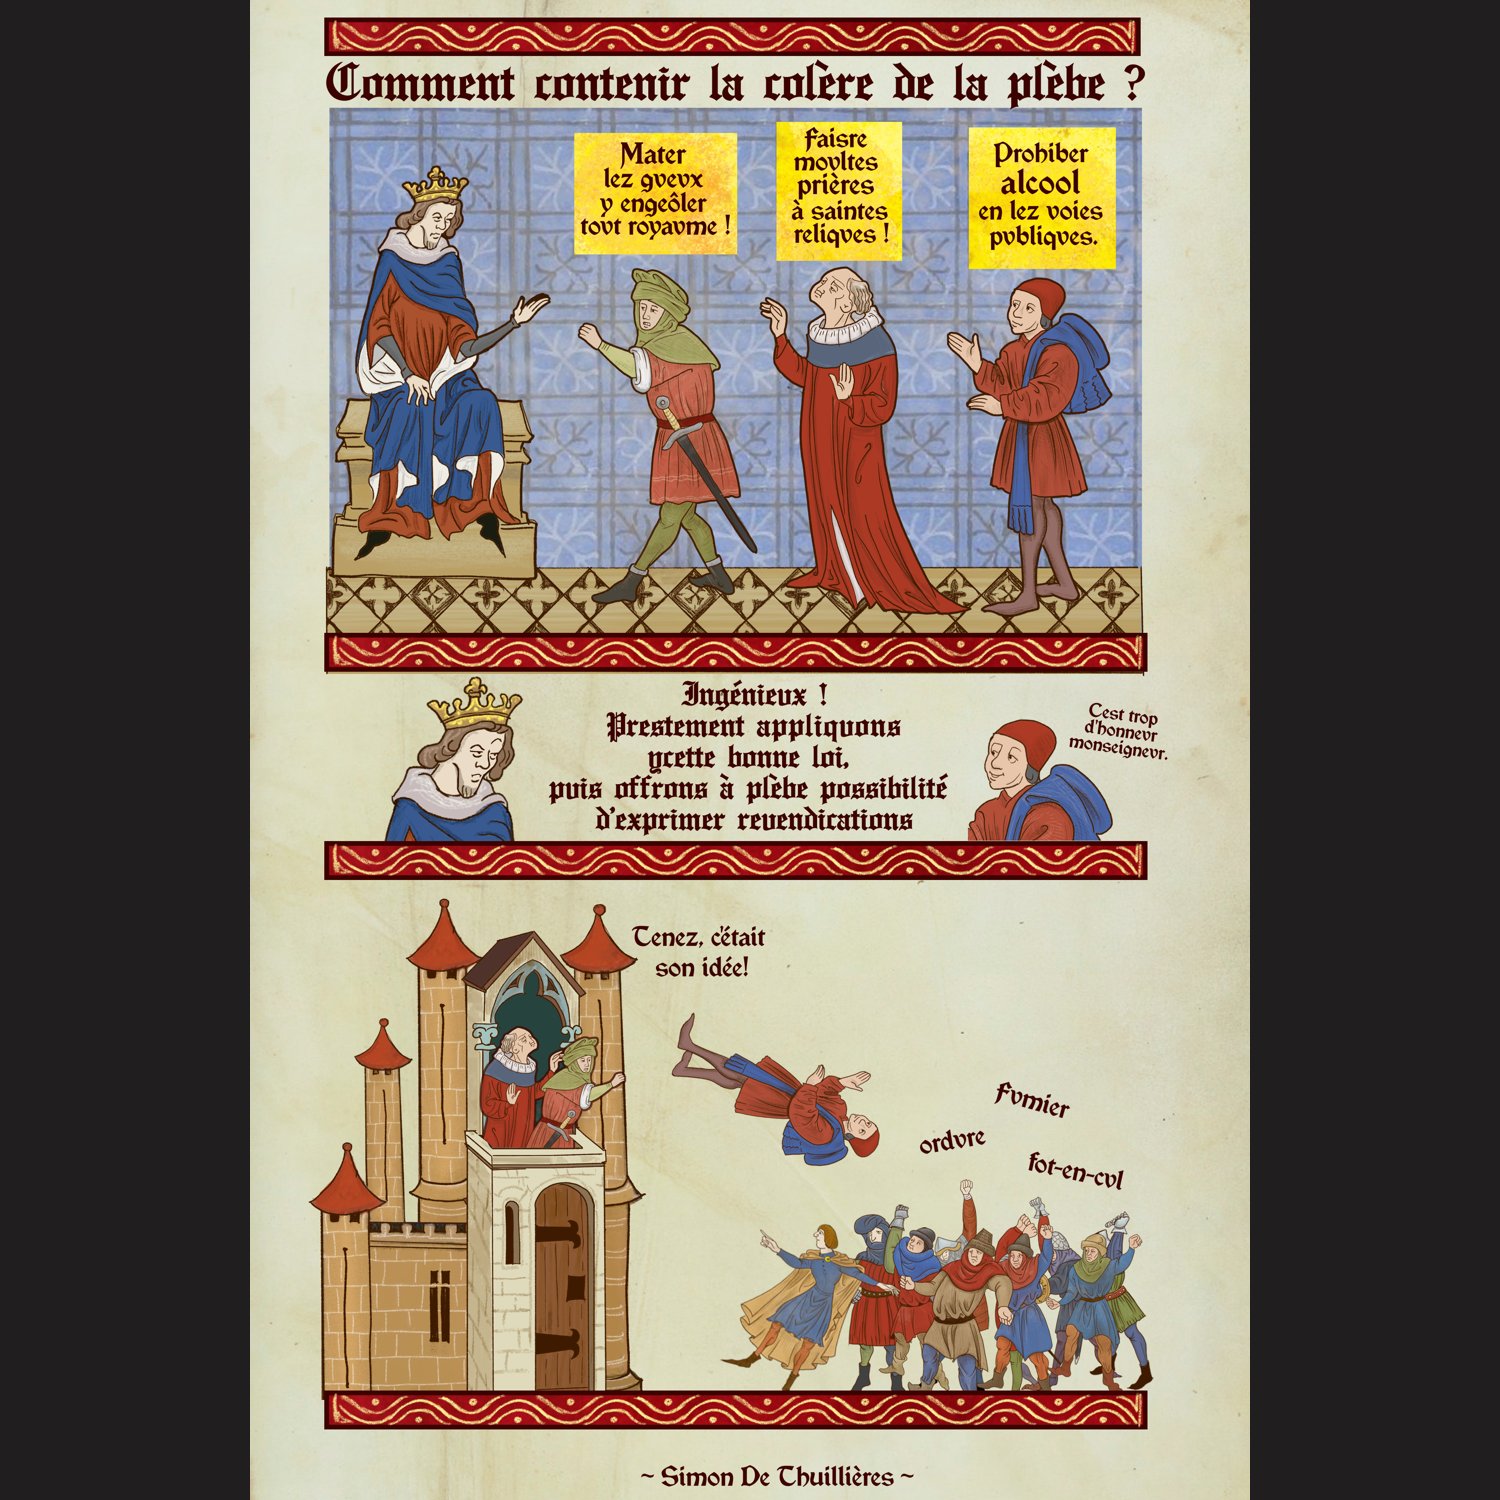 Le codex de Simon de Thuillières - Page 3 Ex_MuYwXMAQJNrF?format=jpg&name=large